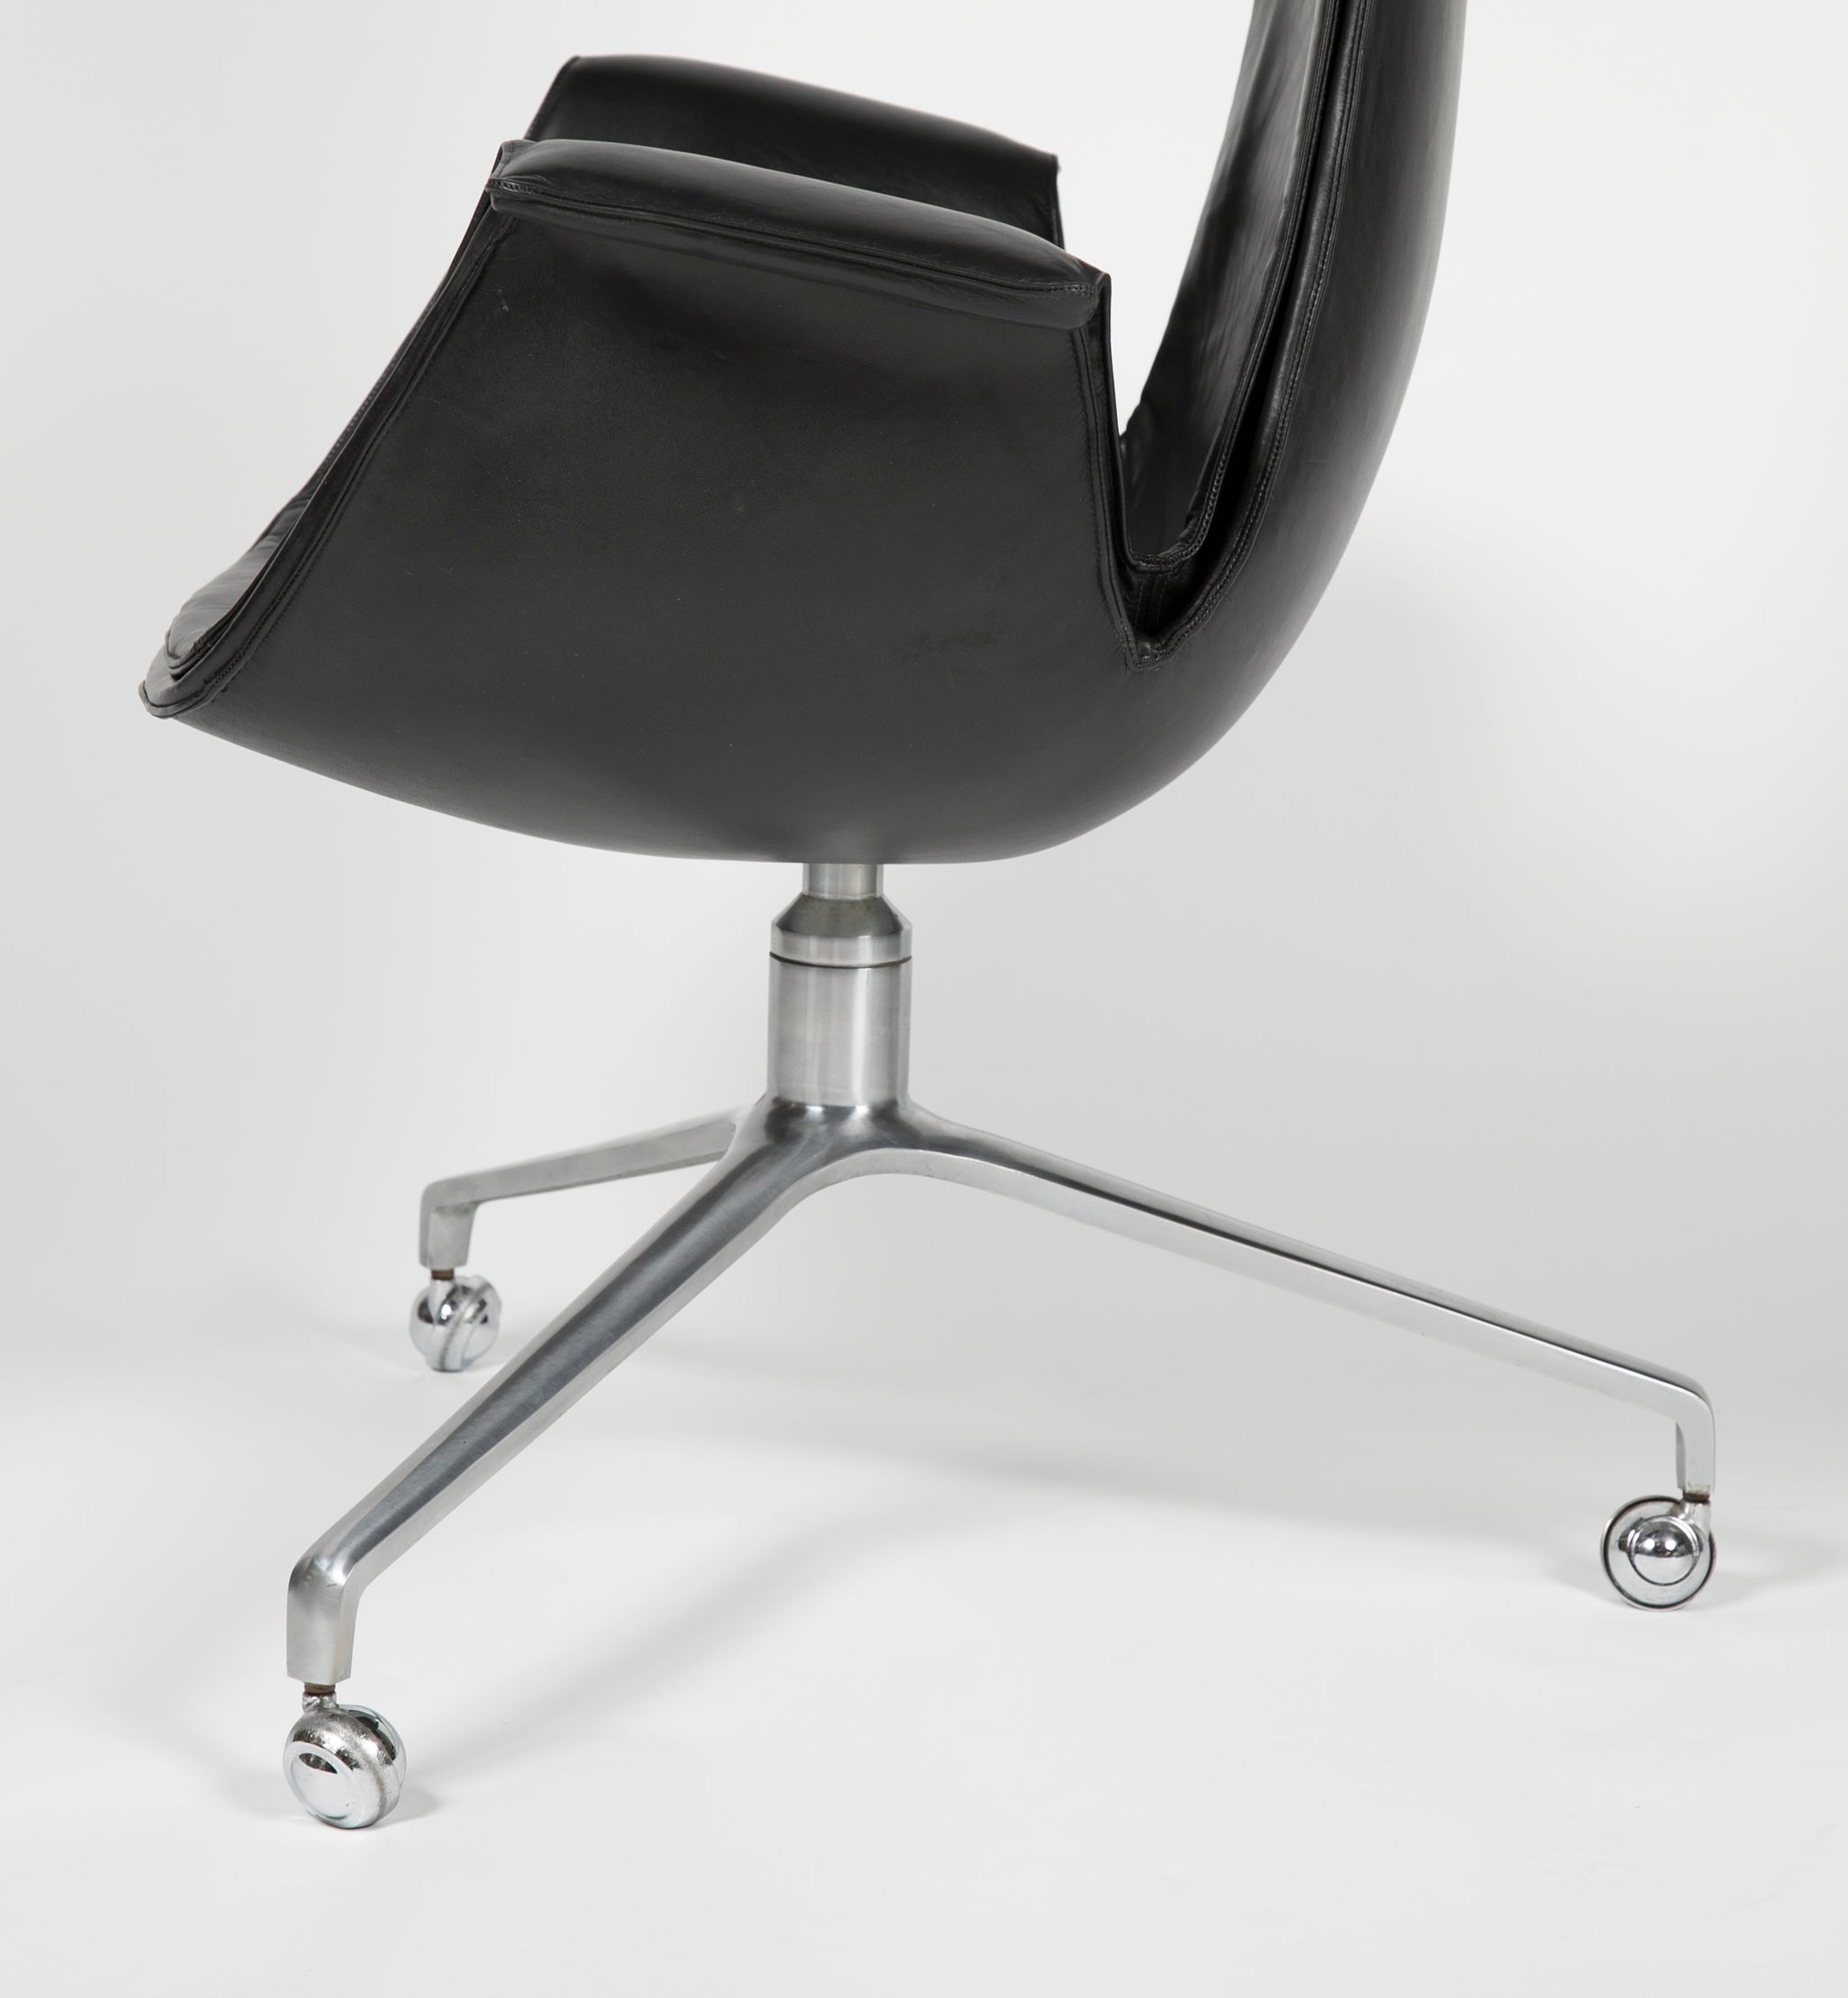 Desk ‘Bird’ Chair by Preben Fabricius for Alfred Kill